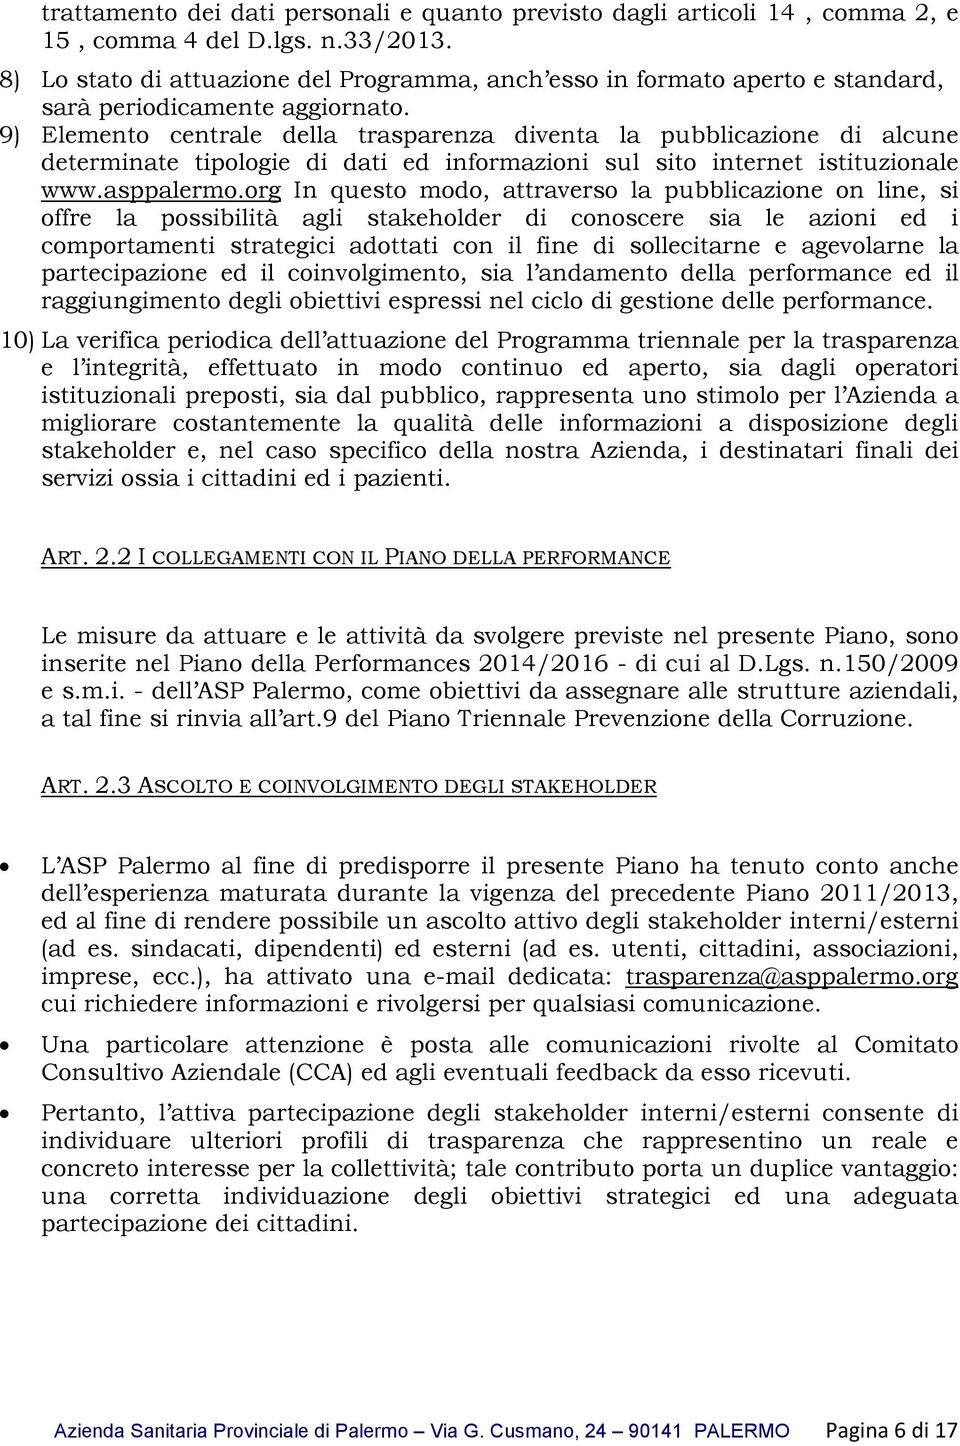 9) Elemento centrale della trasparenza diventa la pubblicazione di alcune determinate tipologie di dati ed informazioni sul sito internet istituzionale www.asppalermo.